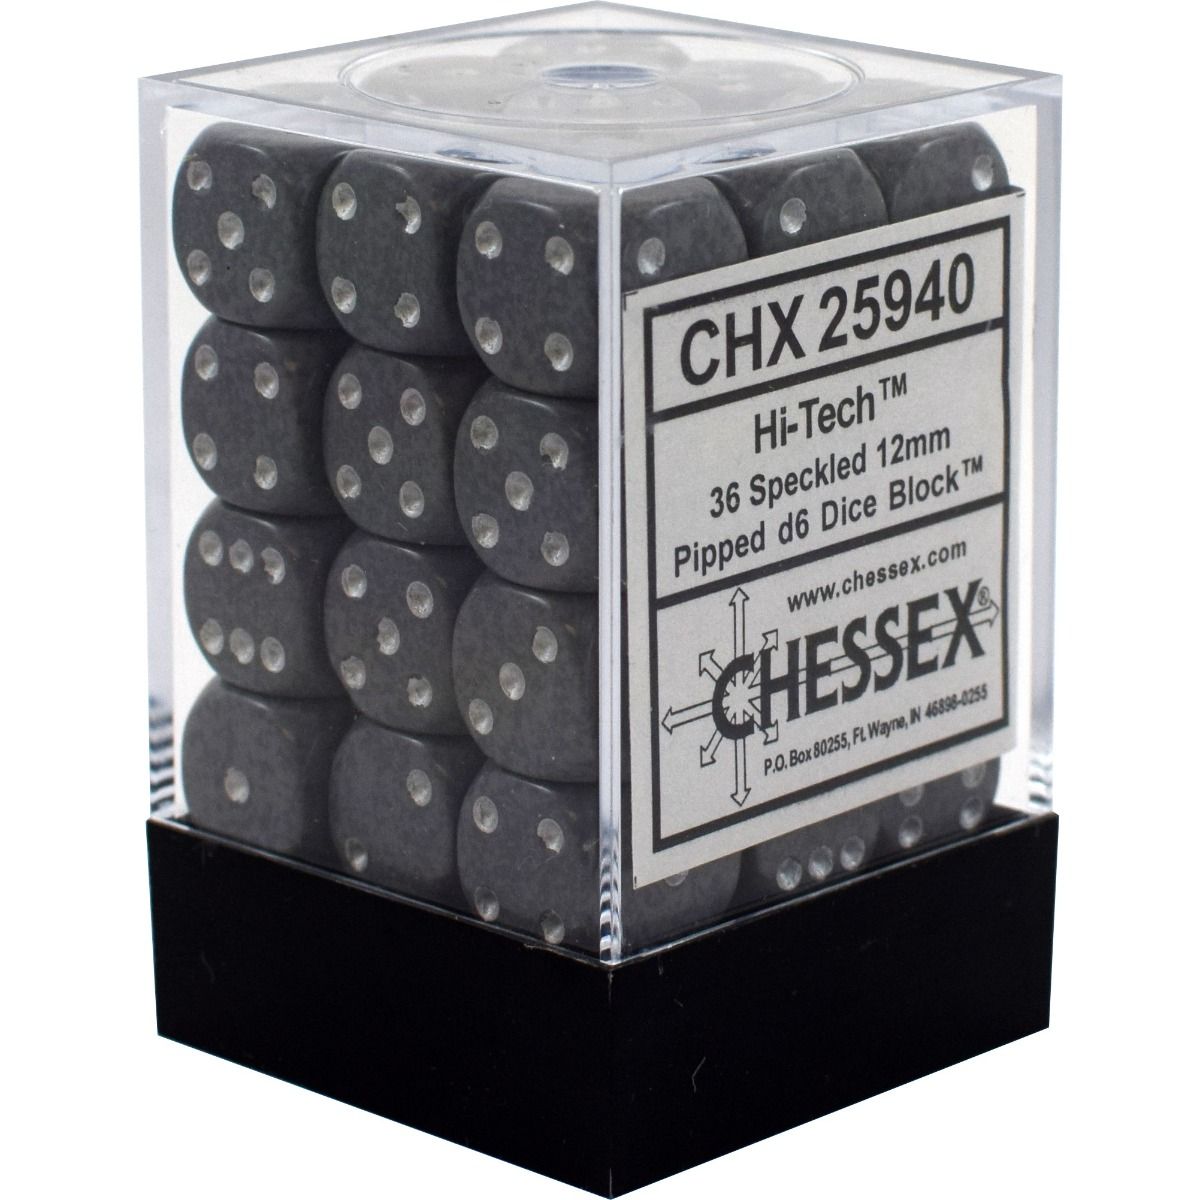 CHX 25940 Speckled 12mm d6 Hi-Tech Block (36)